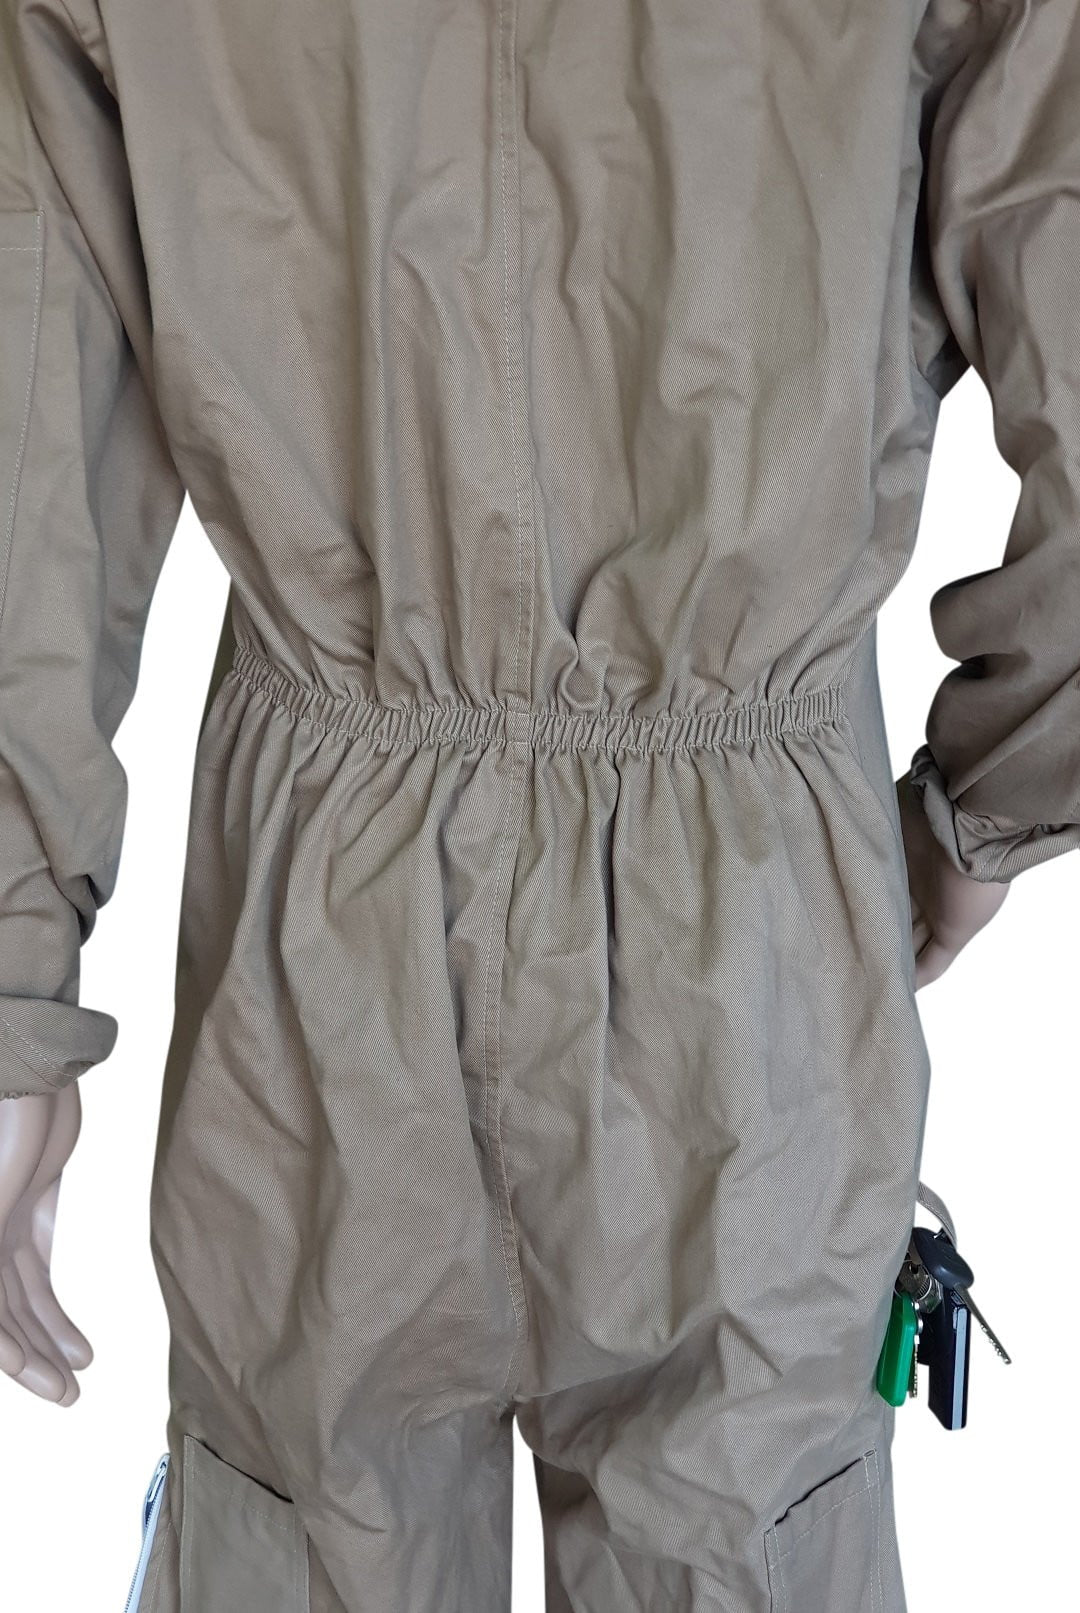 OZ ARMOUR Khaki Poly Cotton Beekeeping Suit With Fencing Veil,Beekeeping,beekeeping gear,oz armour